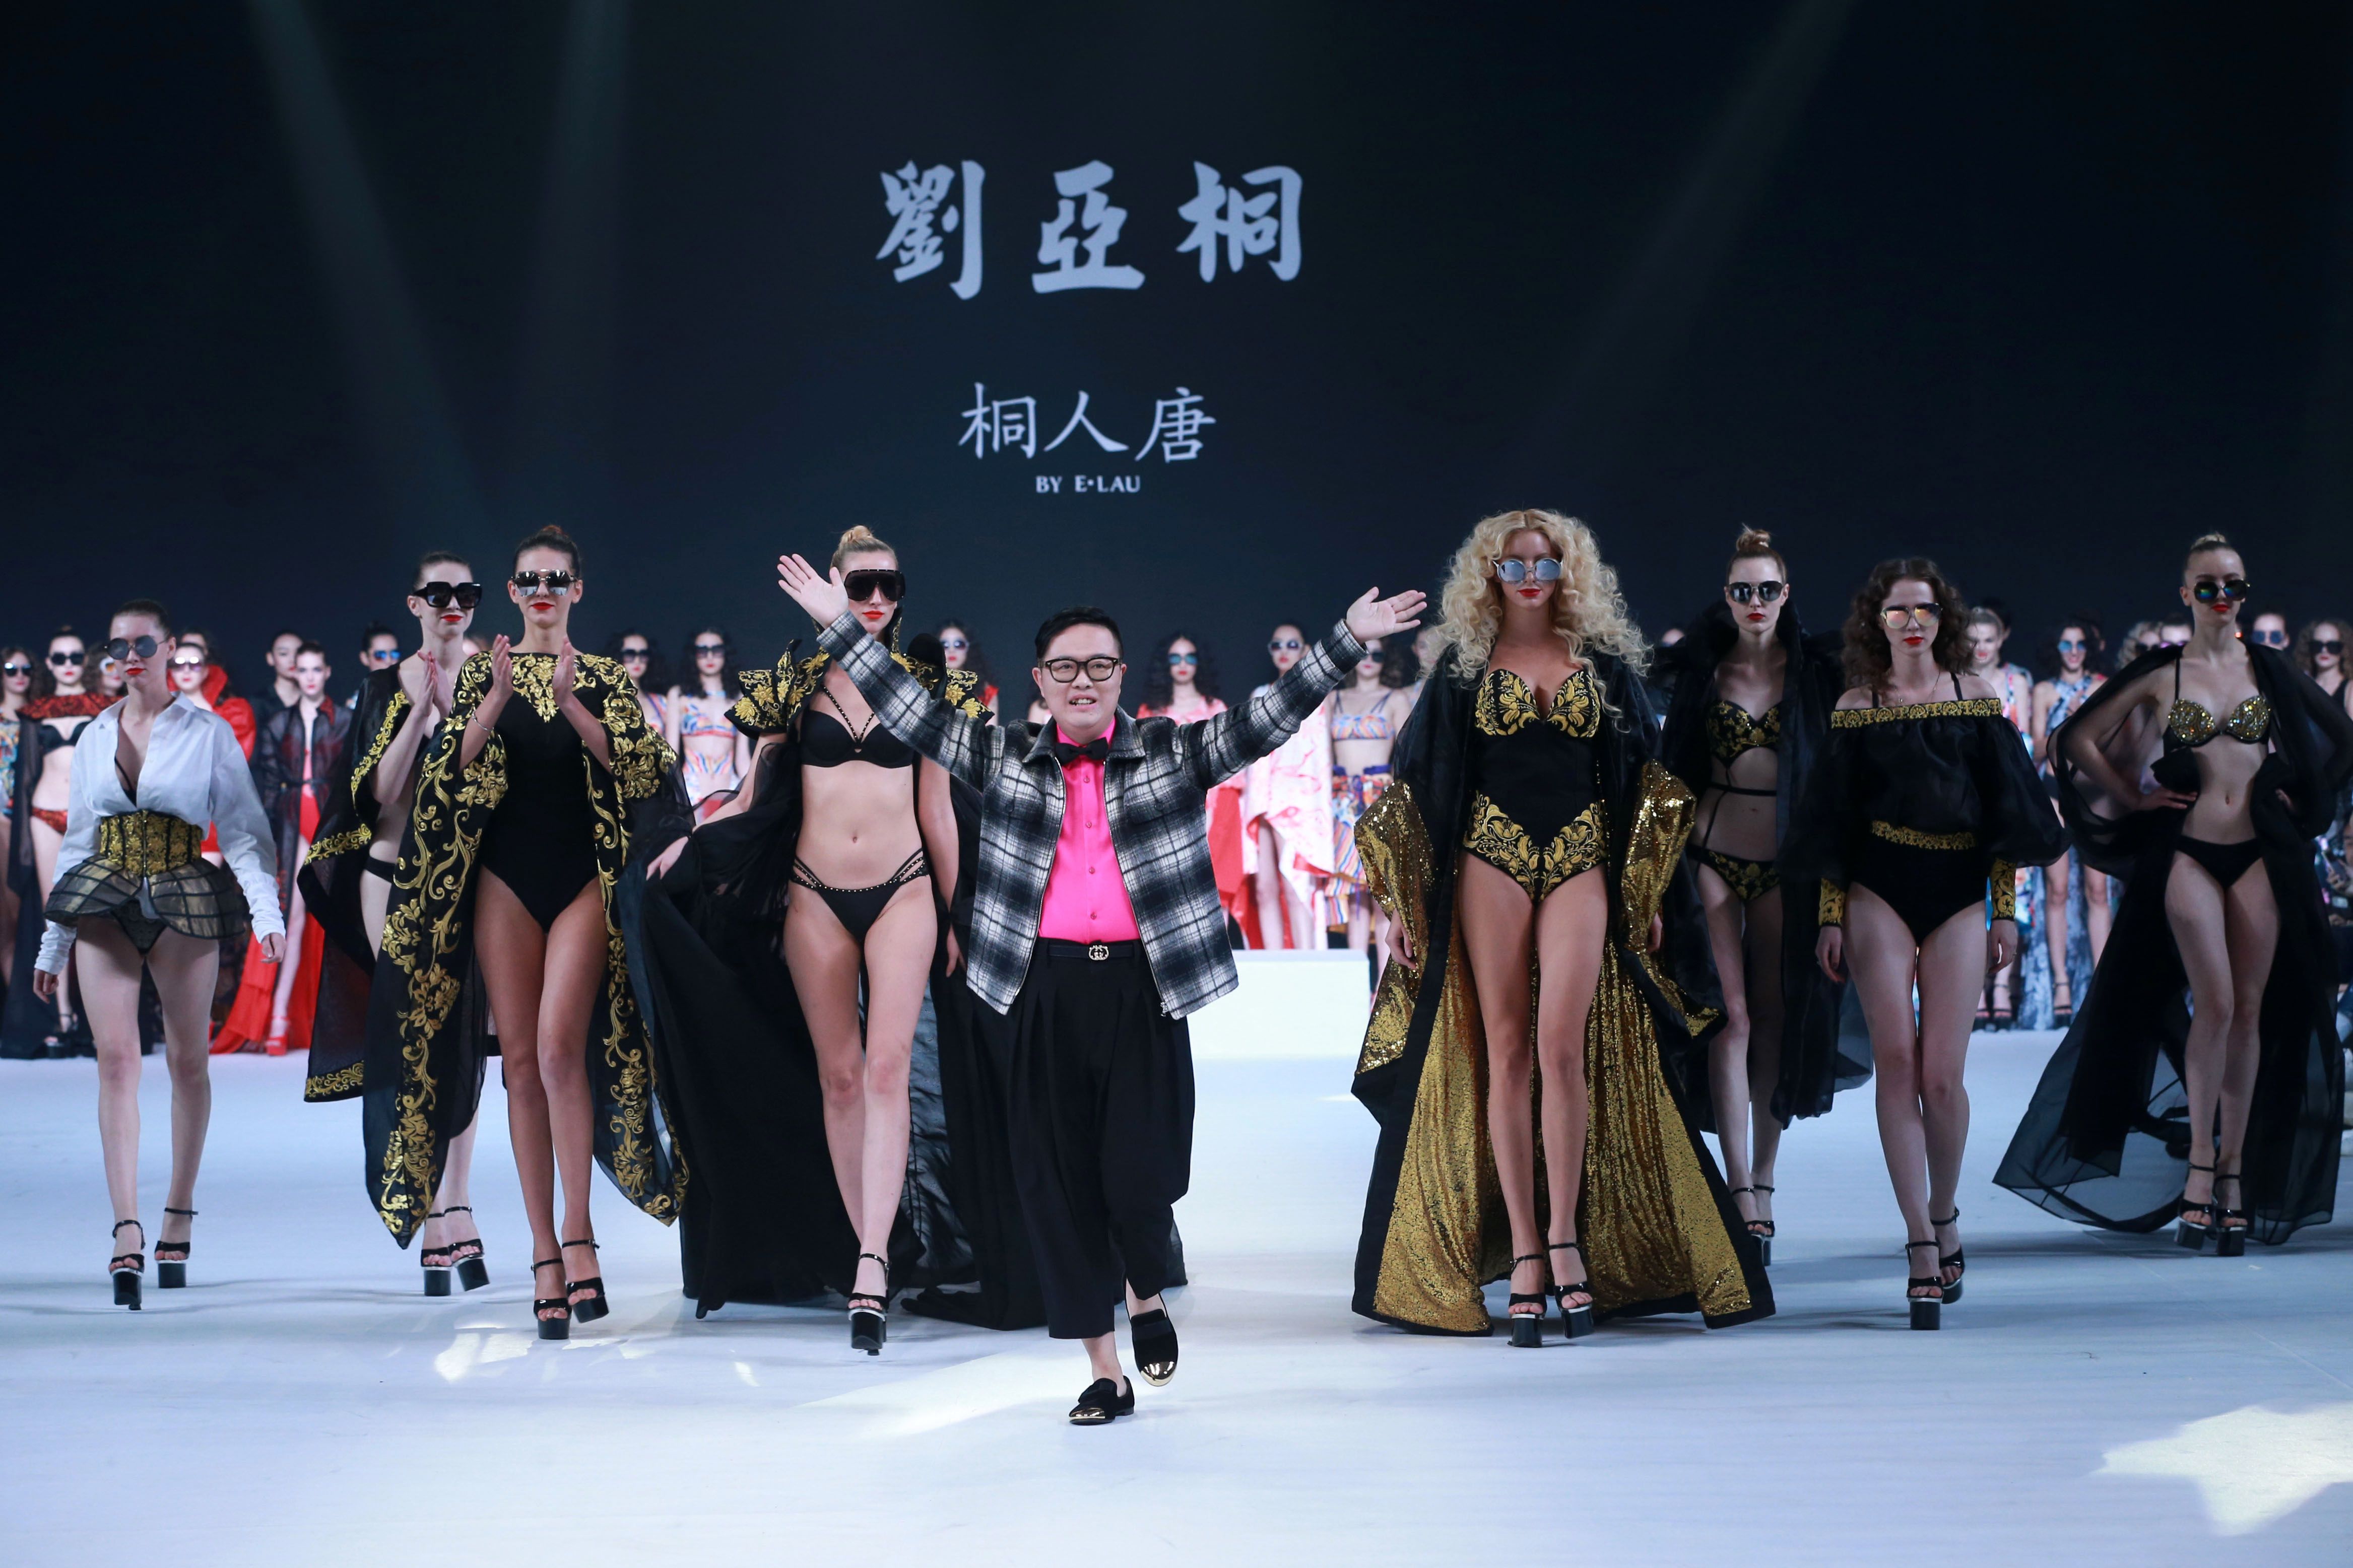 عرض أزياء خلال أسبوع الموضة فى الصين (1)